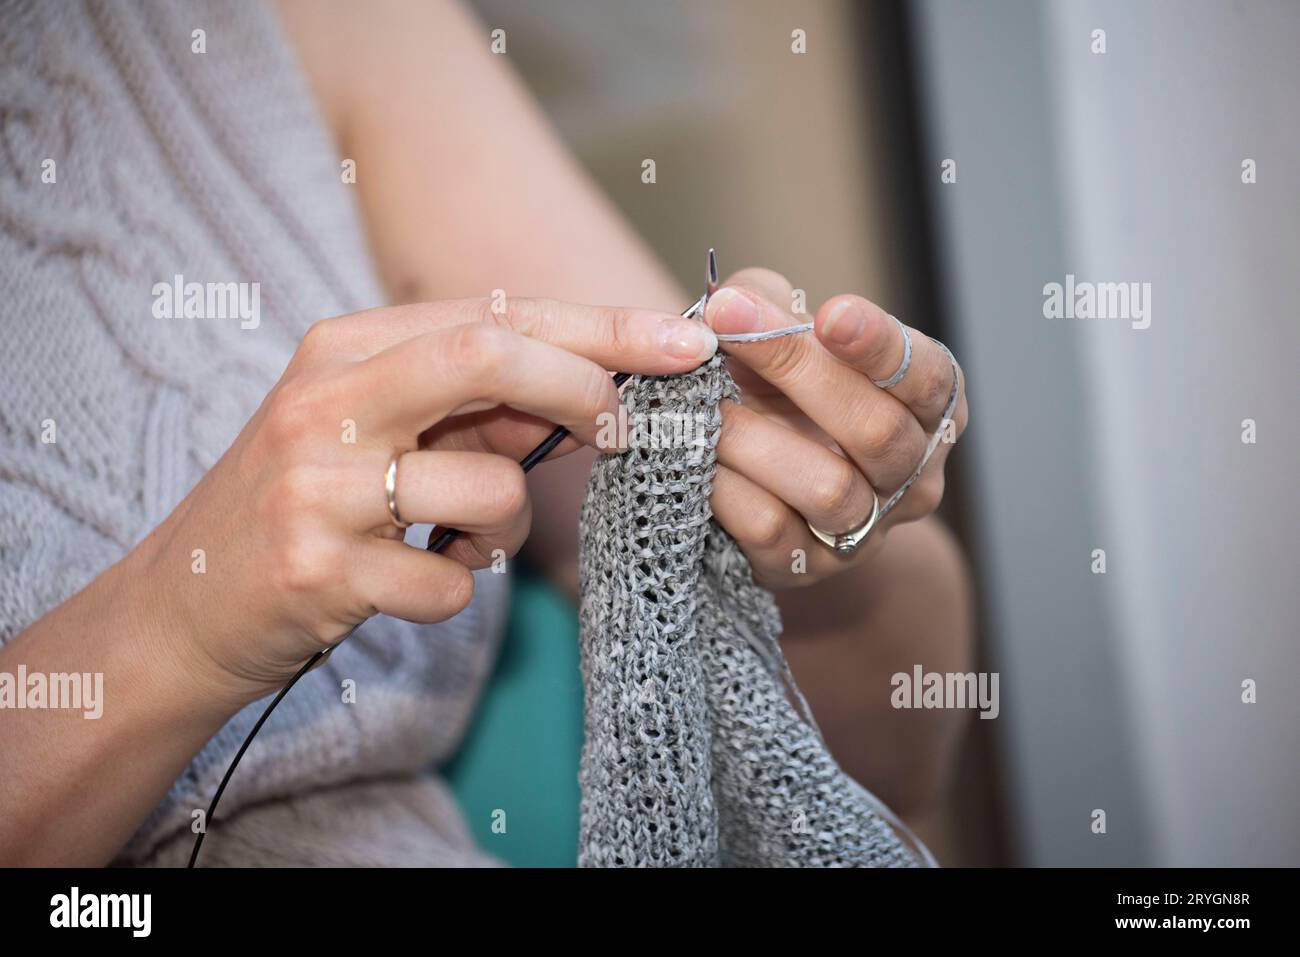 Femme tricotant dans le cadre de son travail dans le ménage Banque D'Images